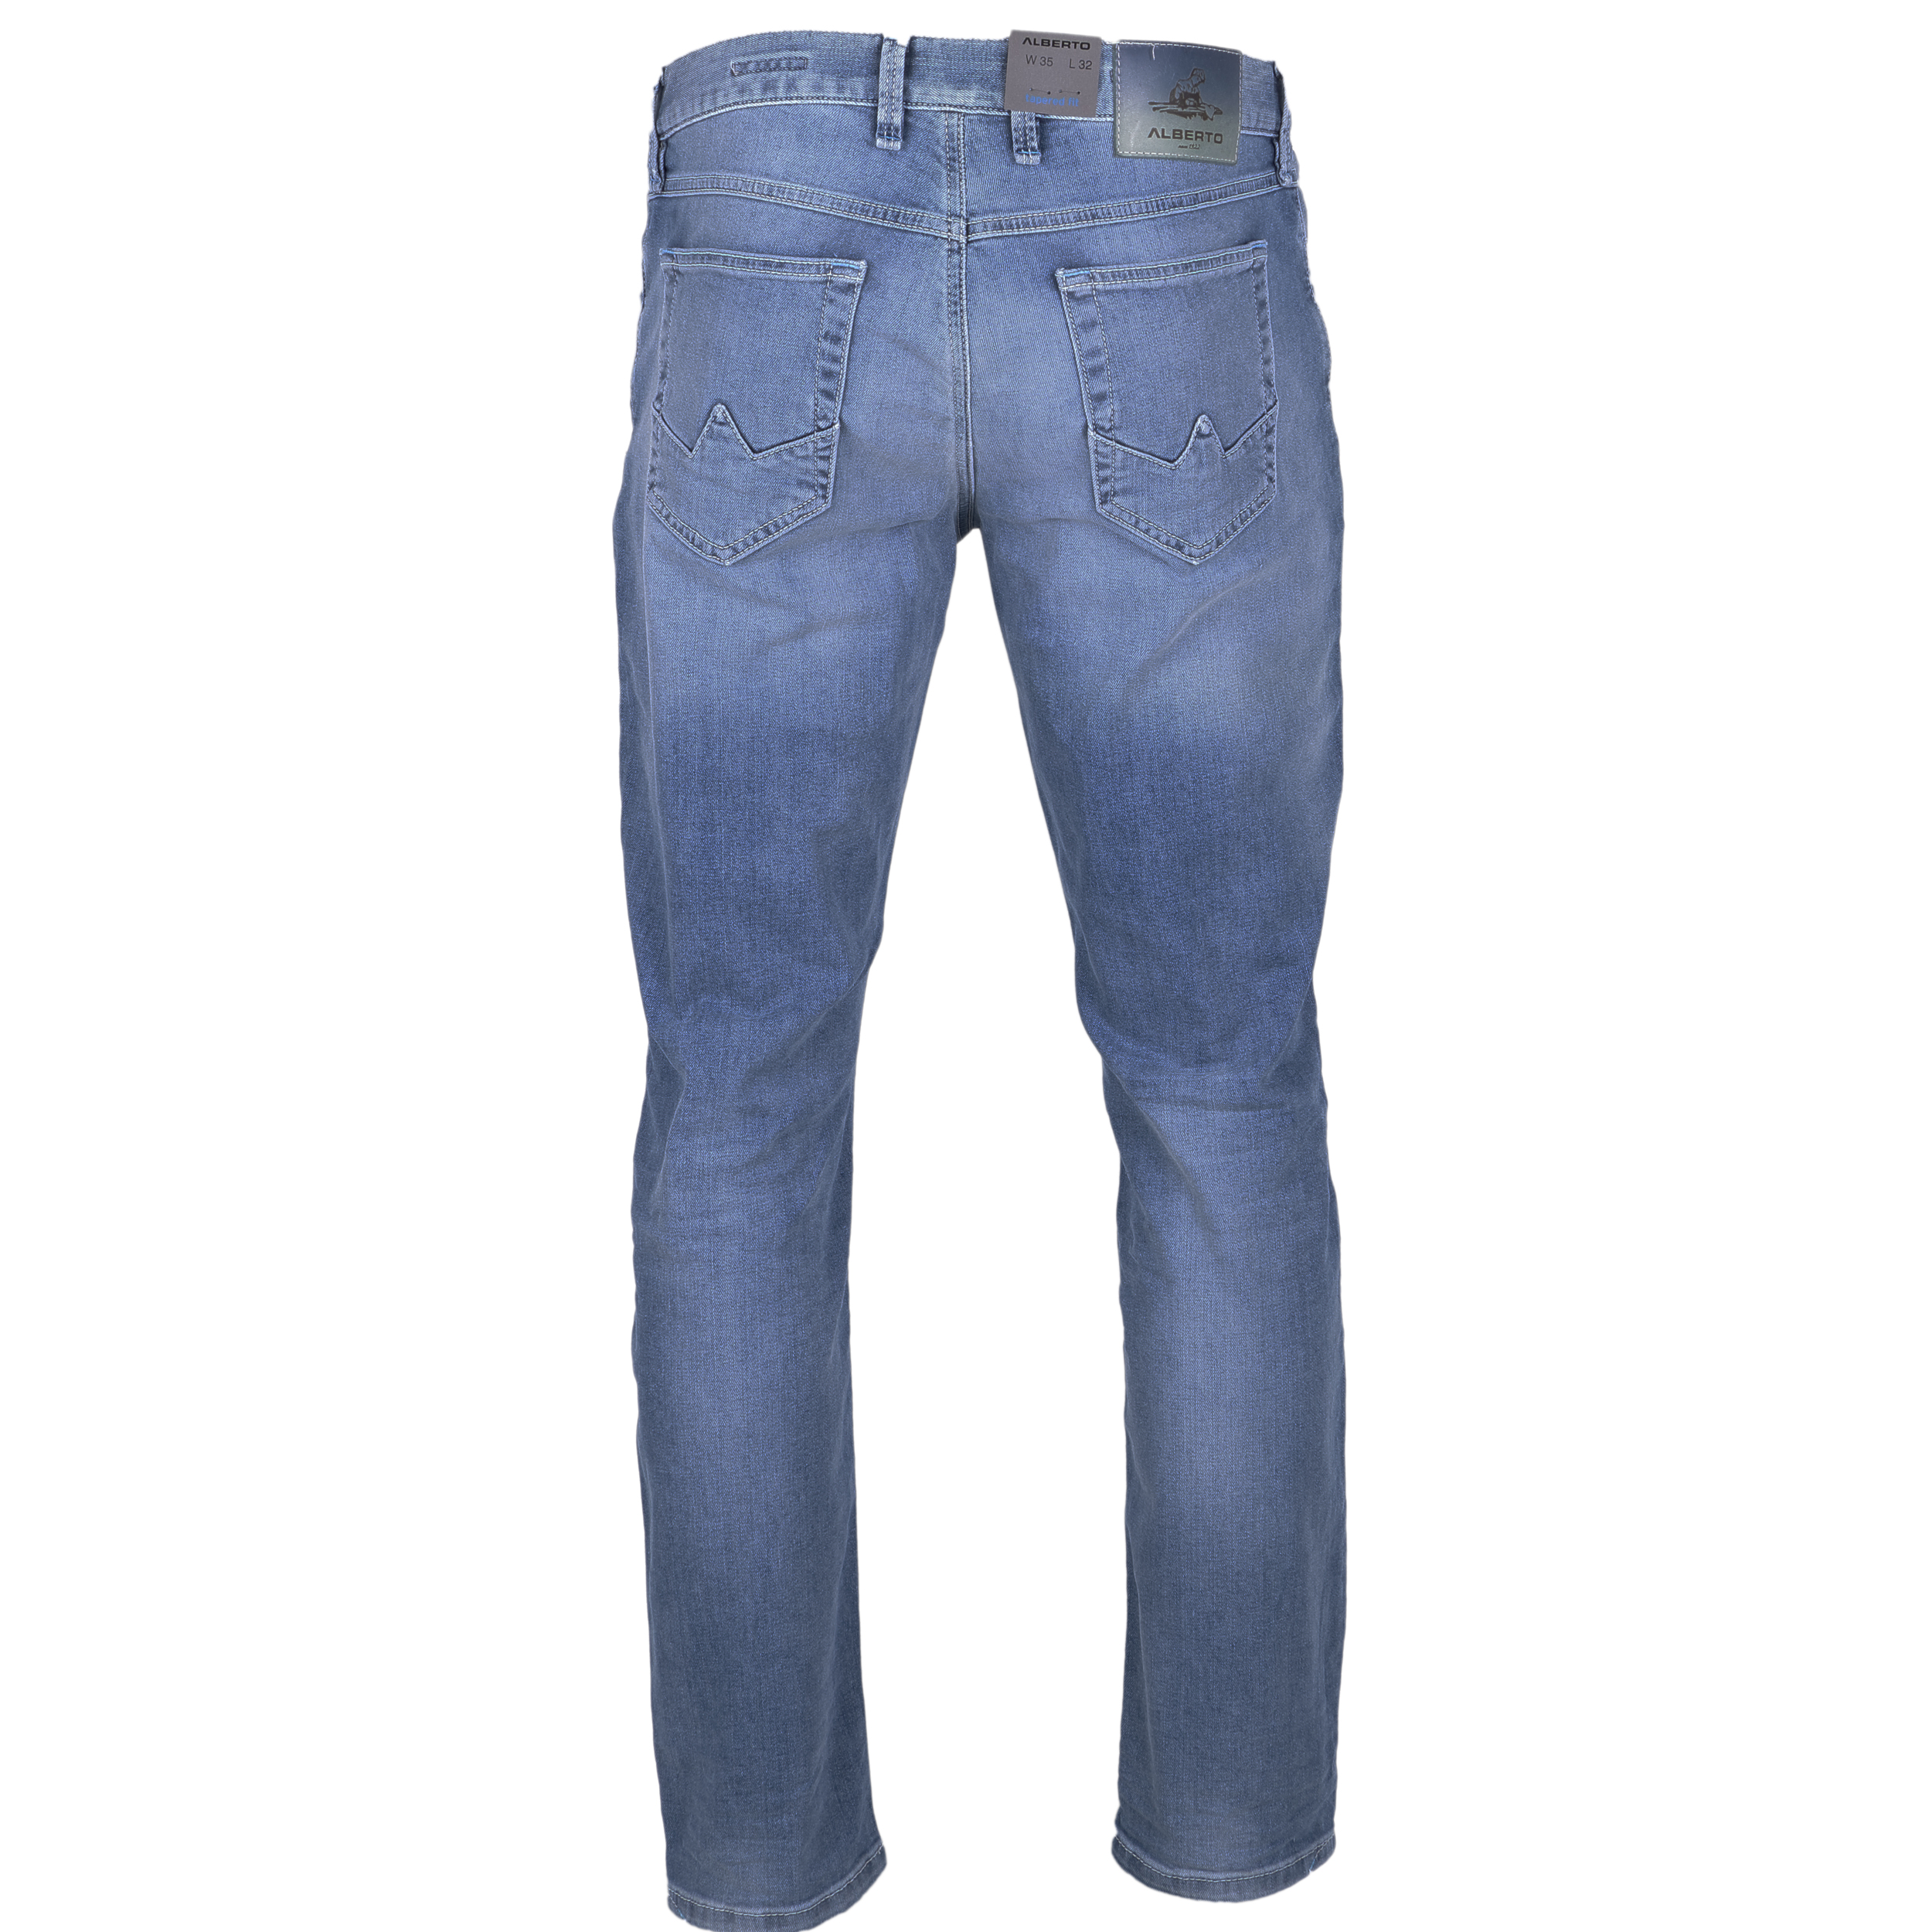 Alberto Herren Jeans Slipe Vintage - hellblau 40/34